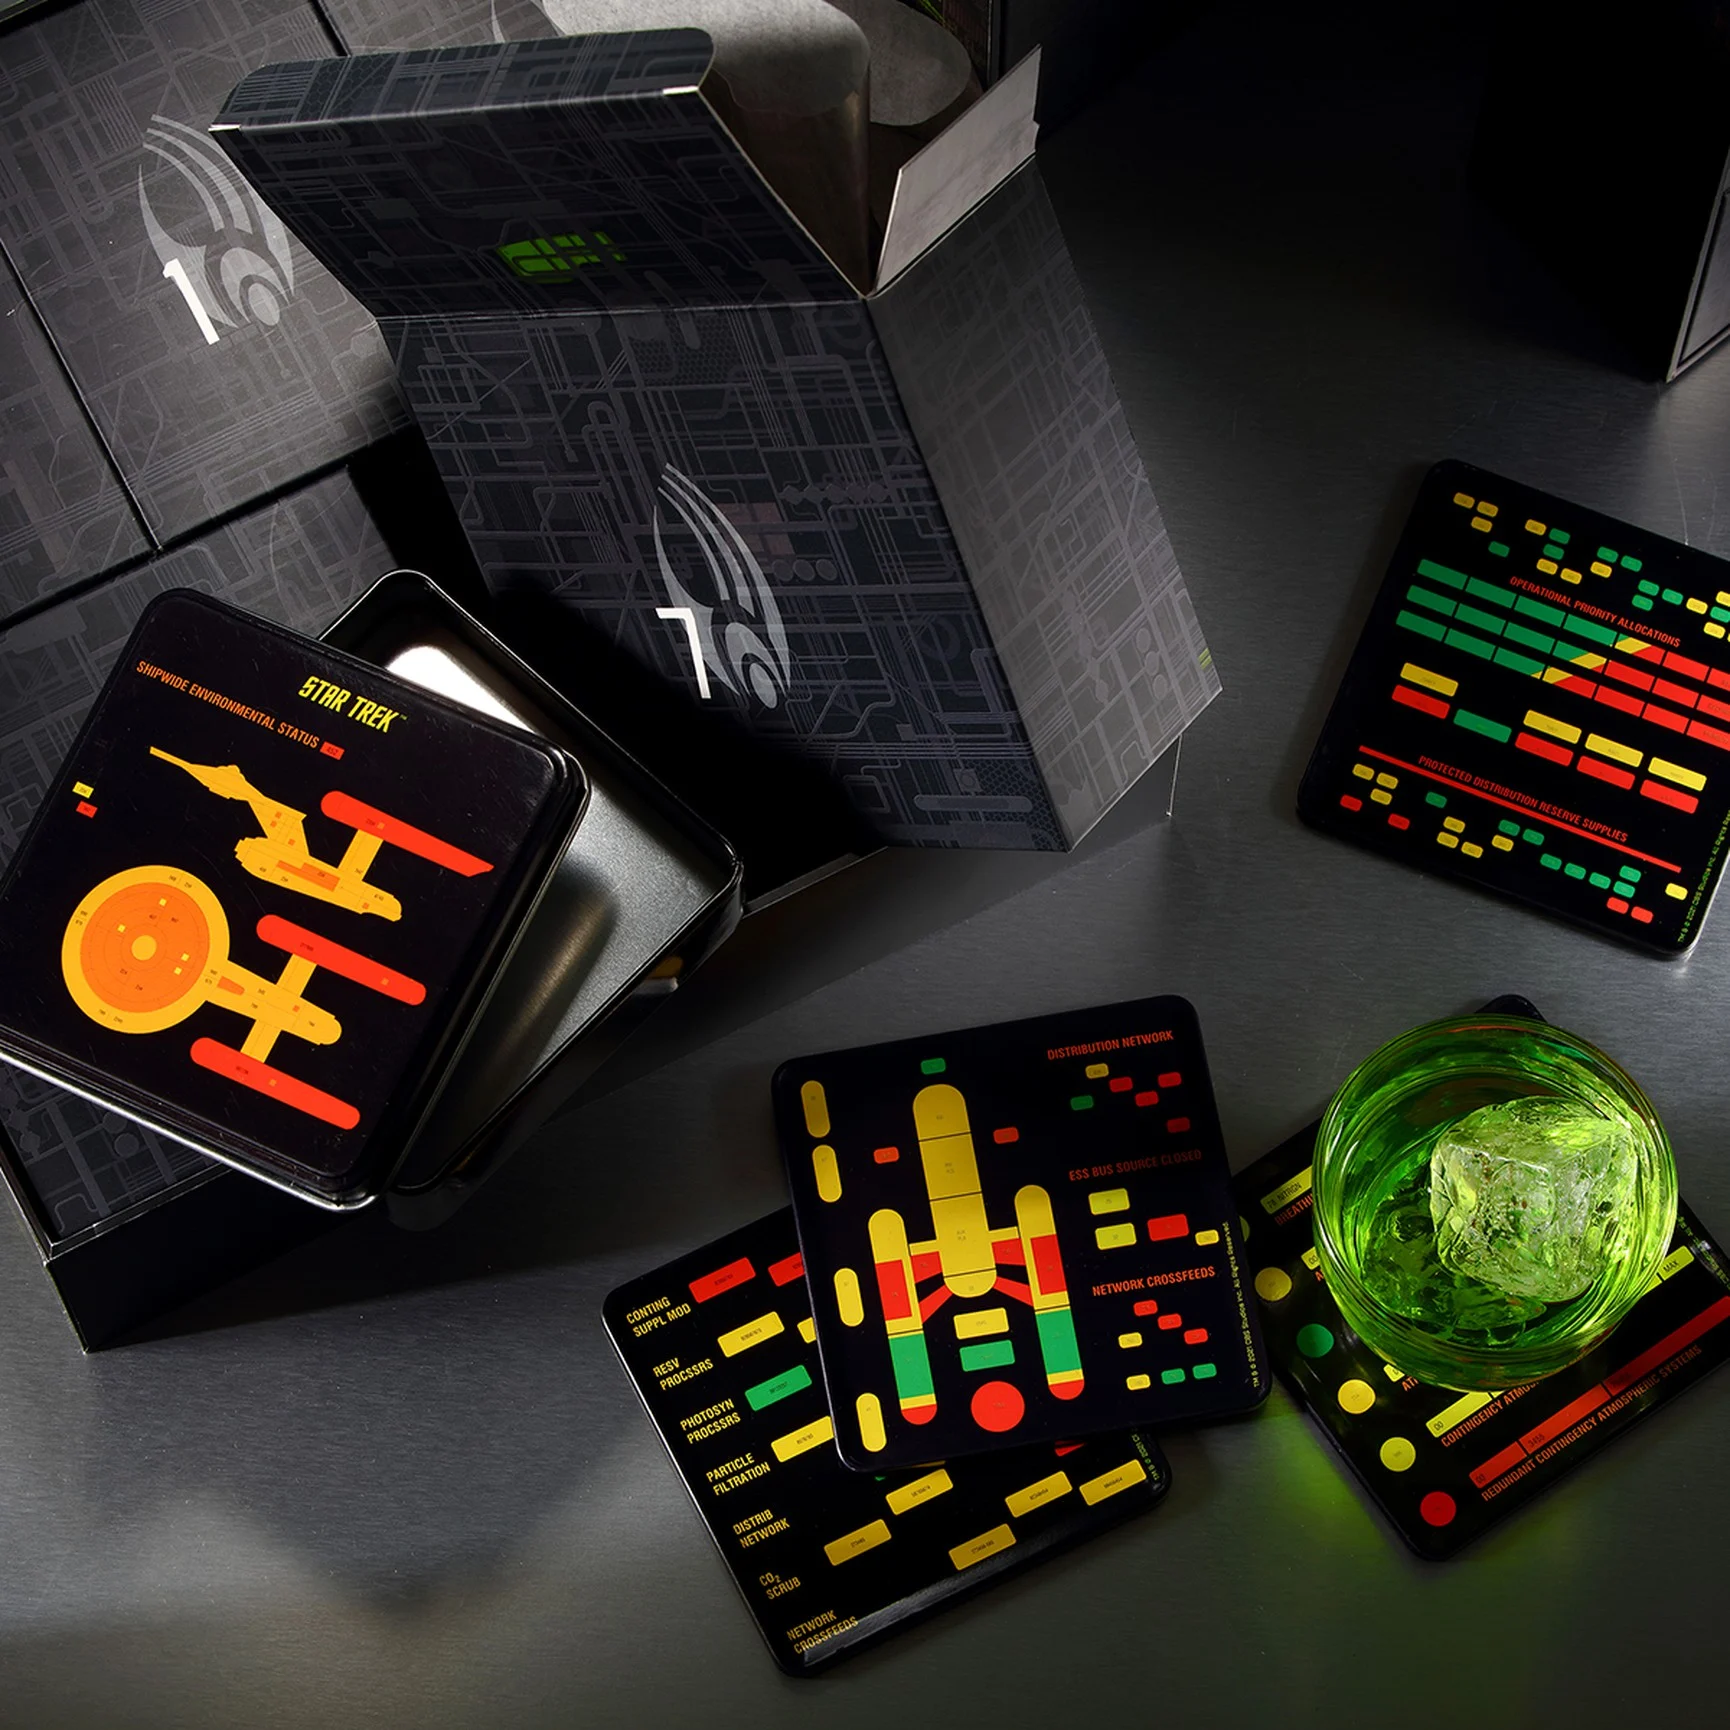 2021 Star Trek Borg Cube Advent Calendar Available Now For Preorder